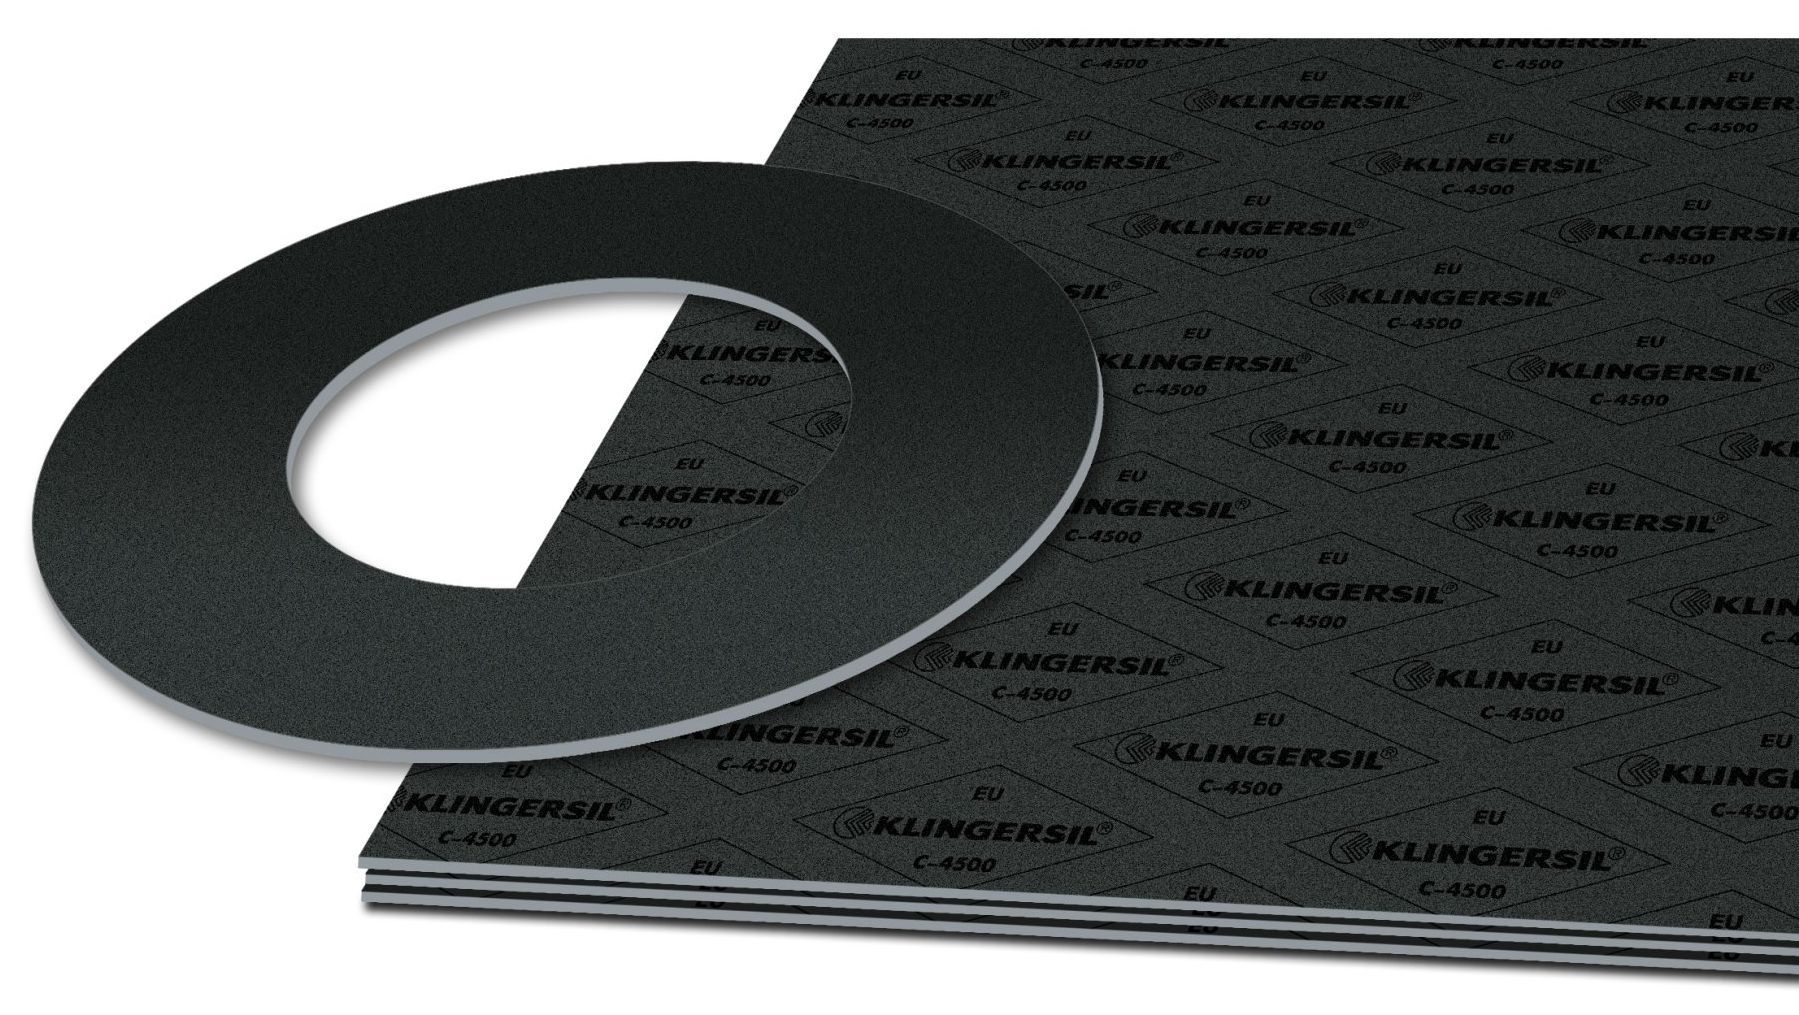 KLINGERSIL C-4401 compressed fiber sheet material with cut gasket